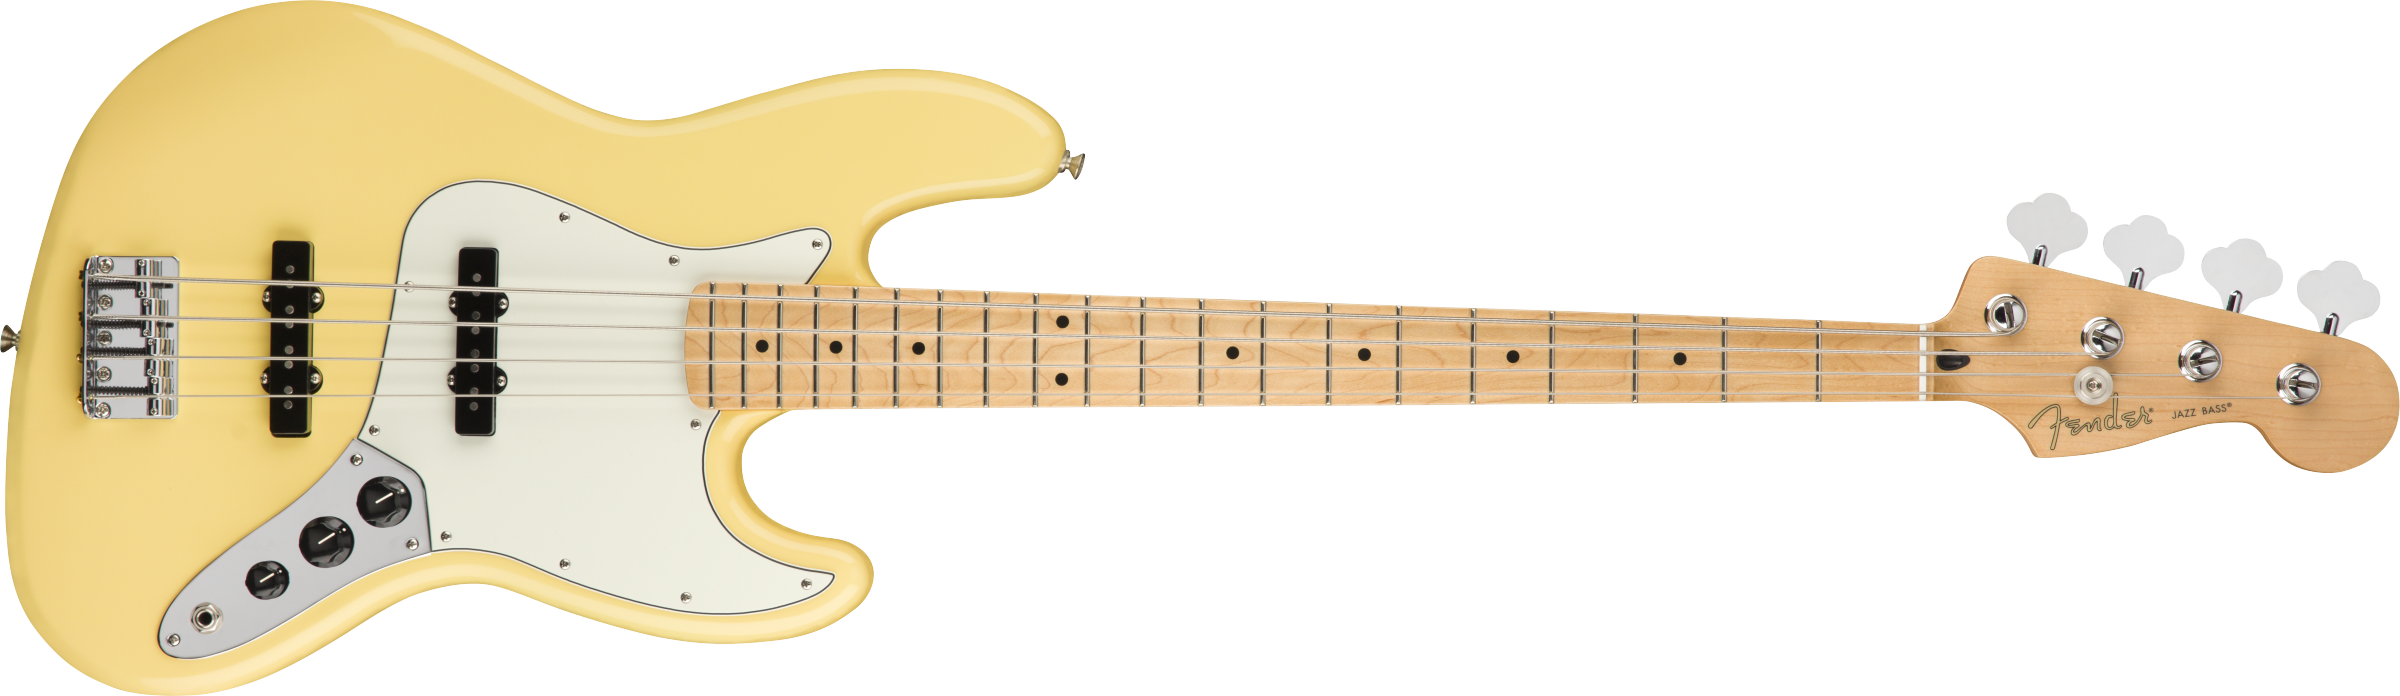 Fender® Player Jazz Bass®, Maple Fingerboard, Buttercream